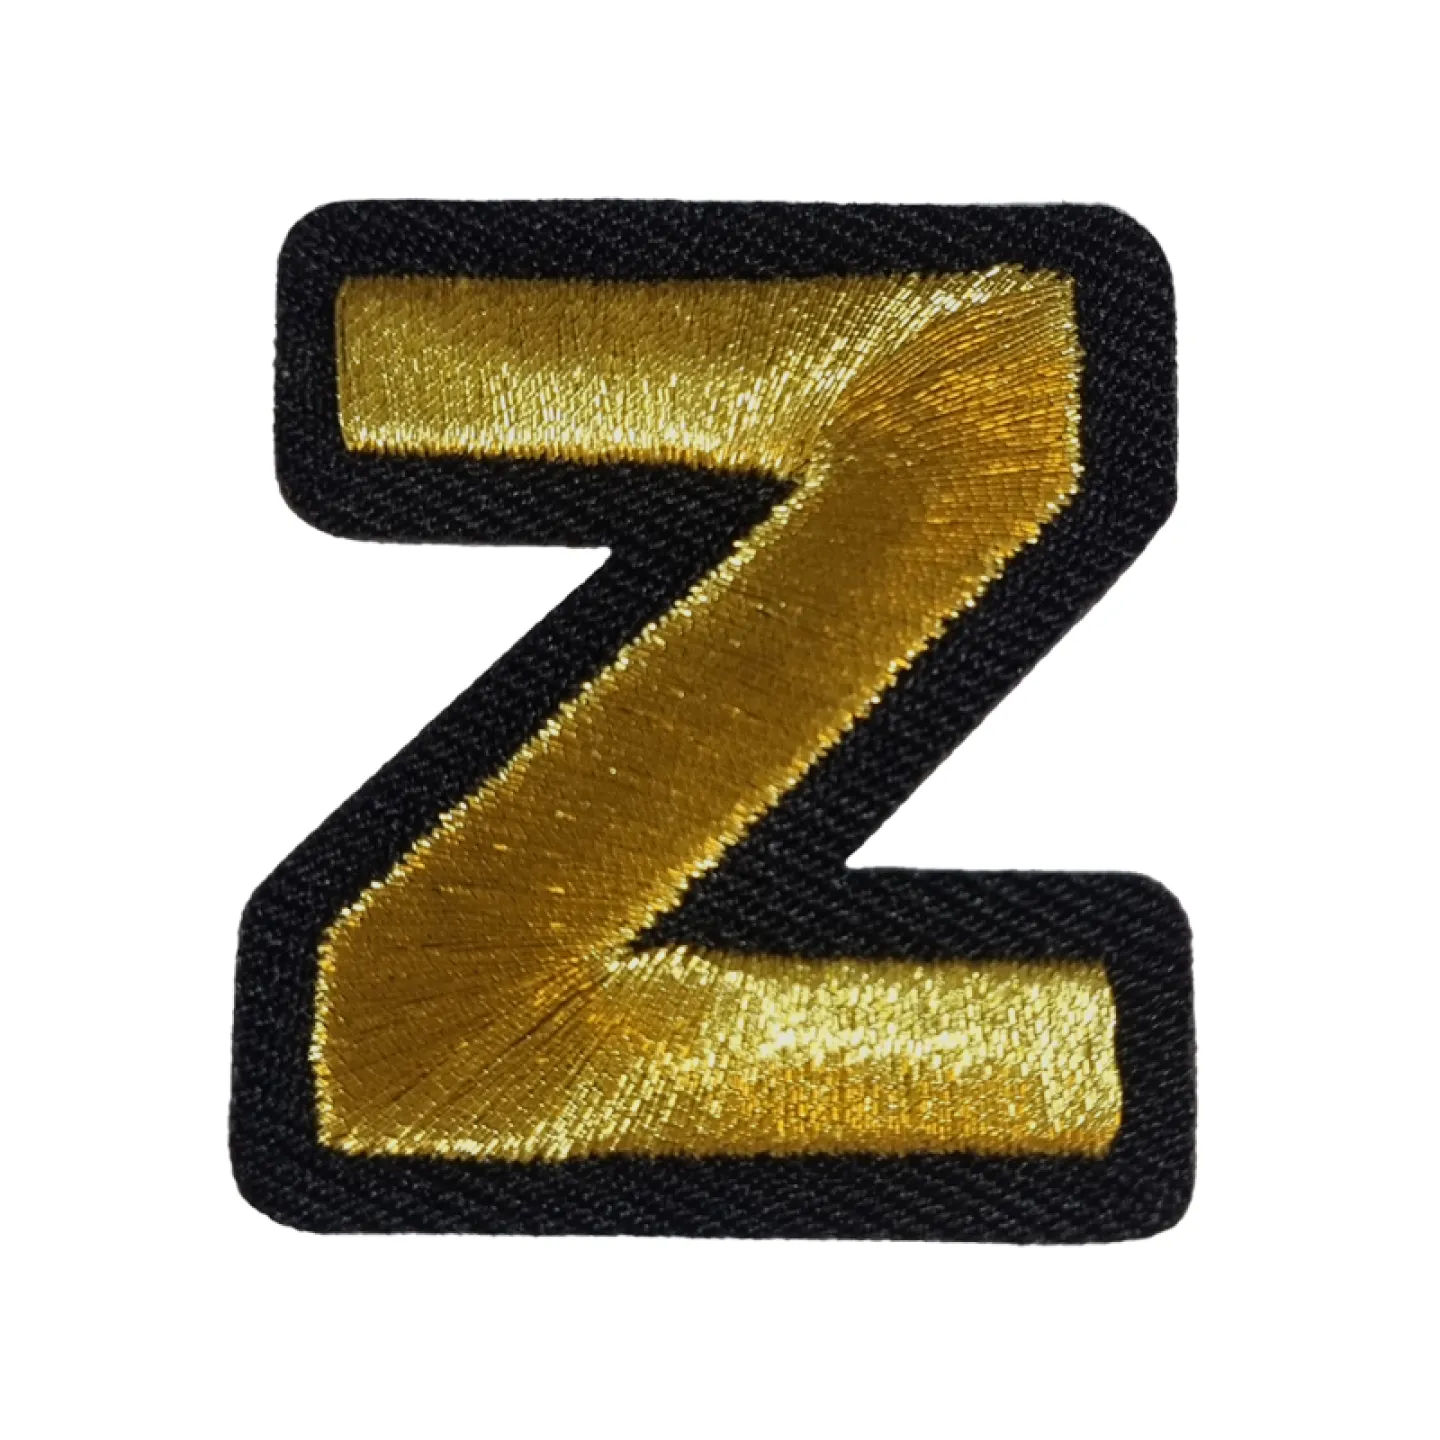 Kruikenstad embleem gouden letter Z goedkoop.